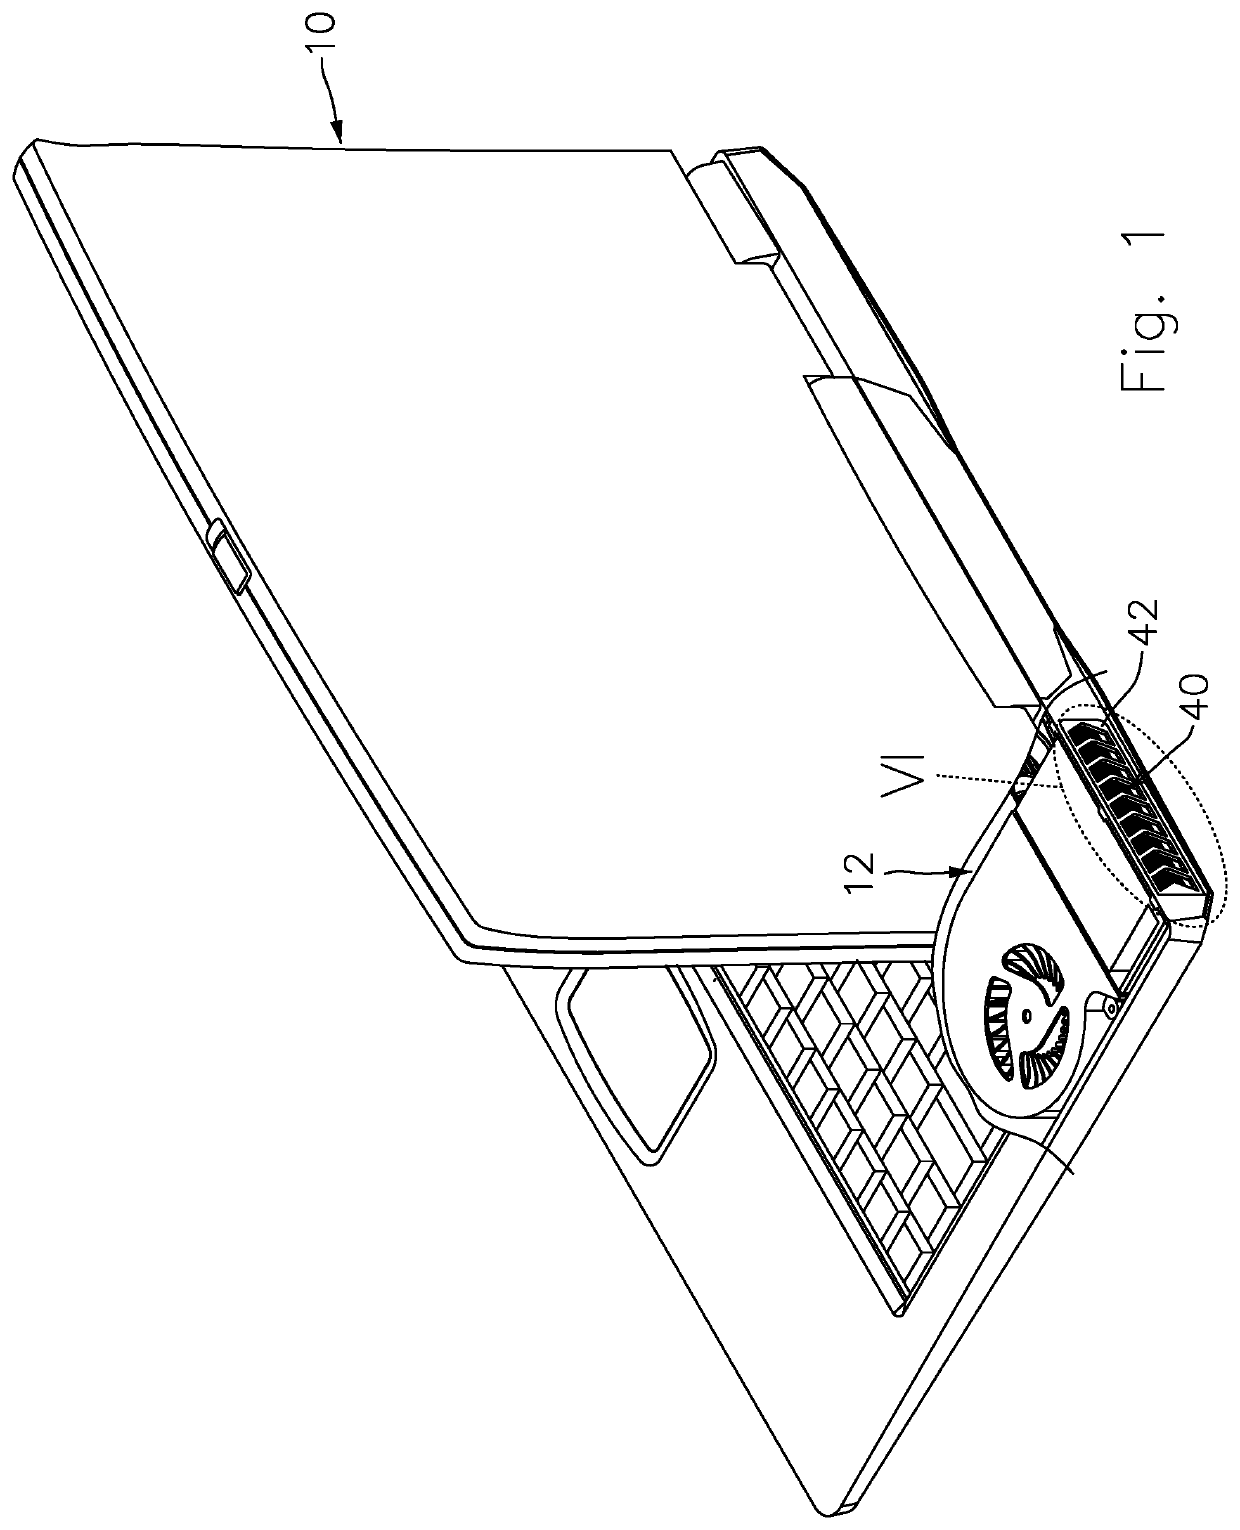 Dustproof device for laptops